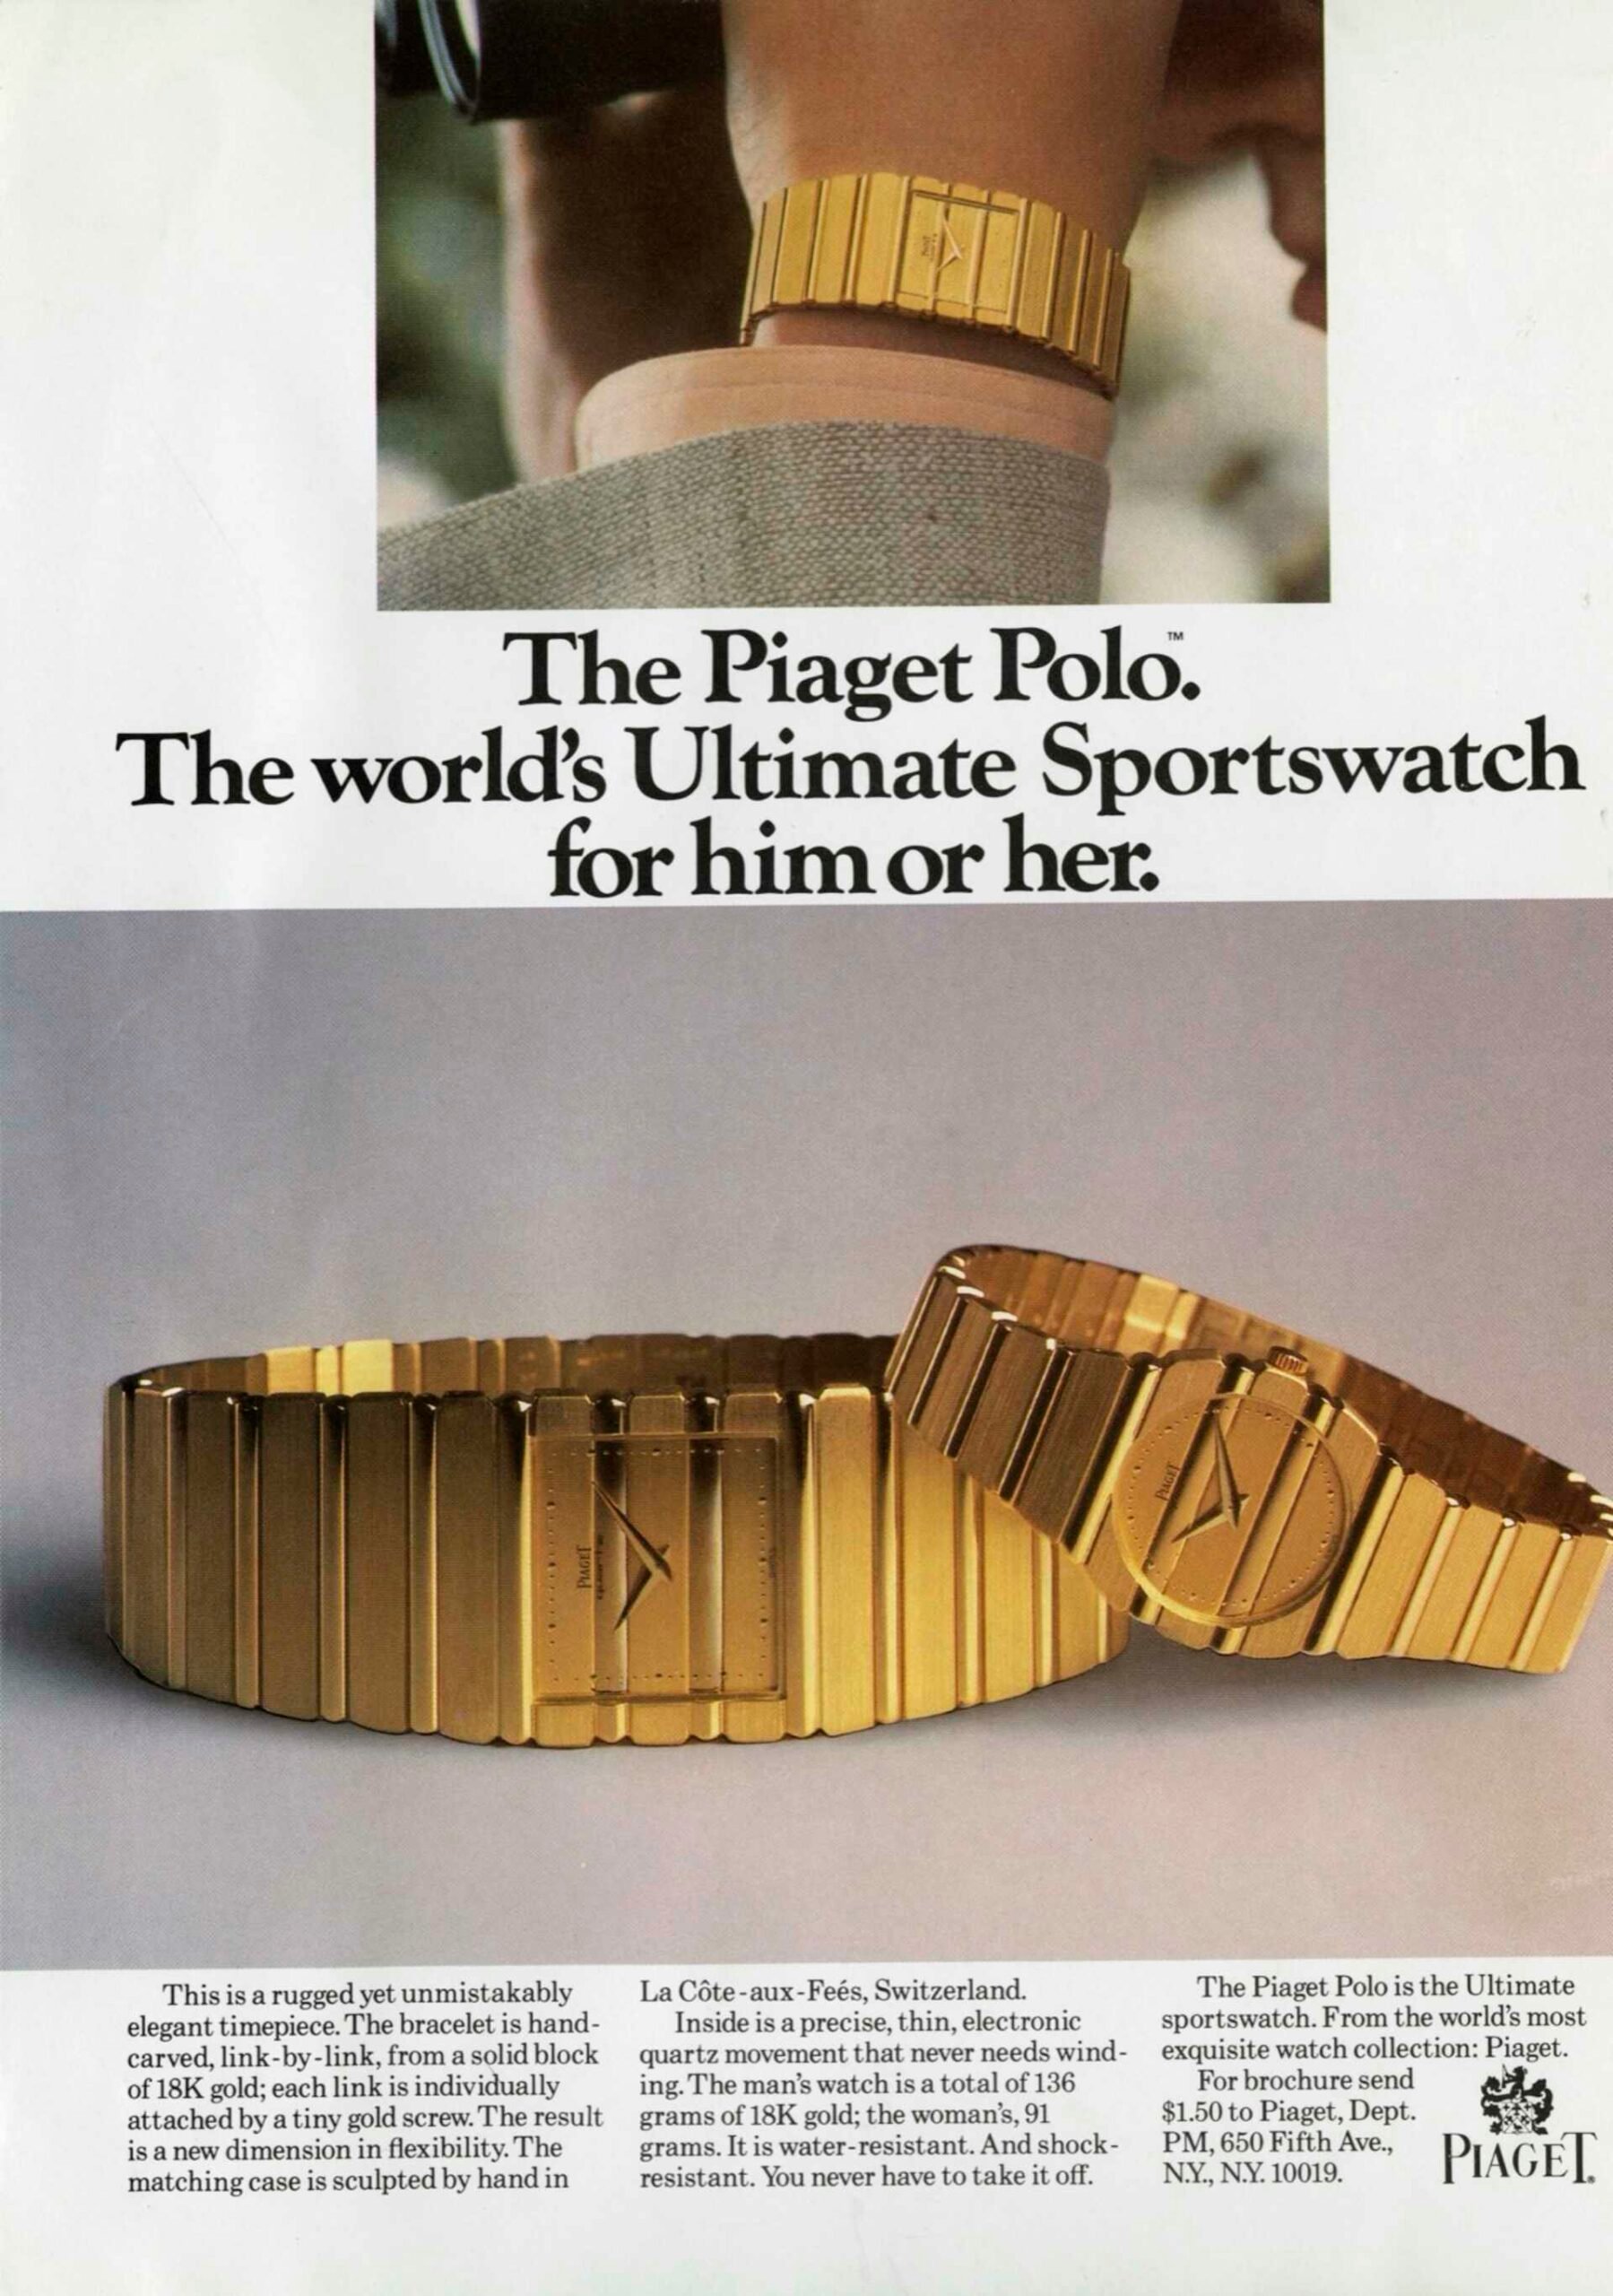 Реклама Piaget Polo